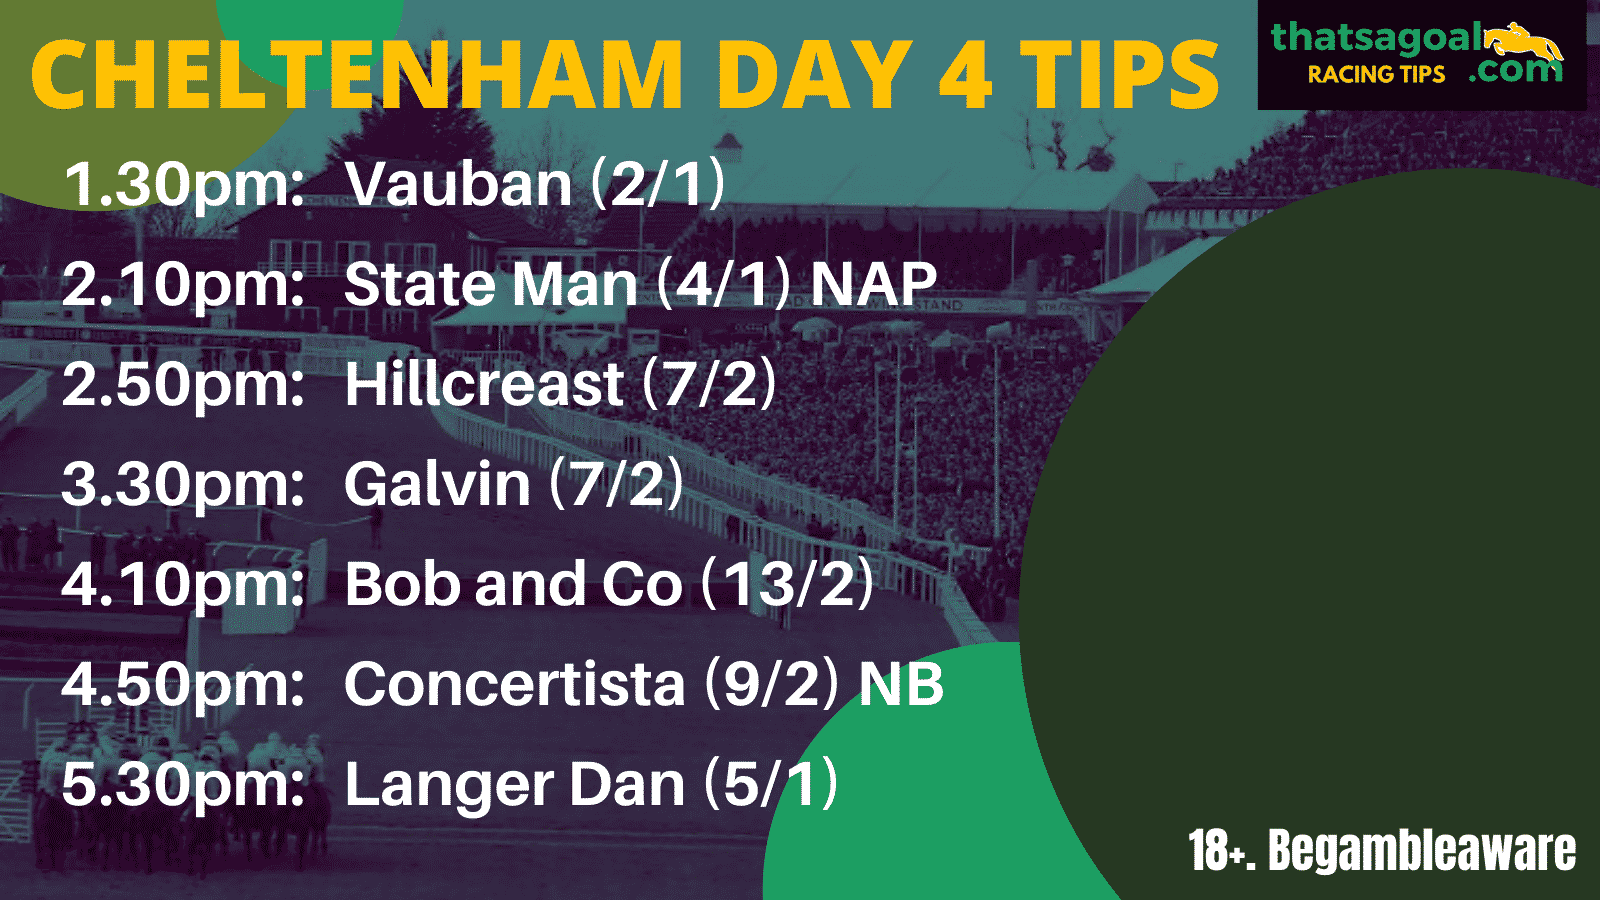 Cheltenham day 4 tips